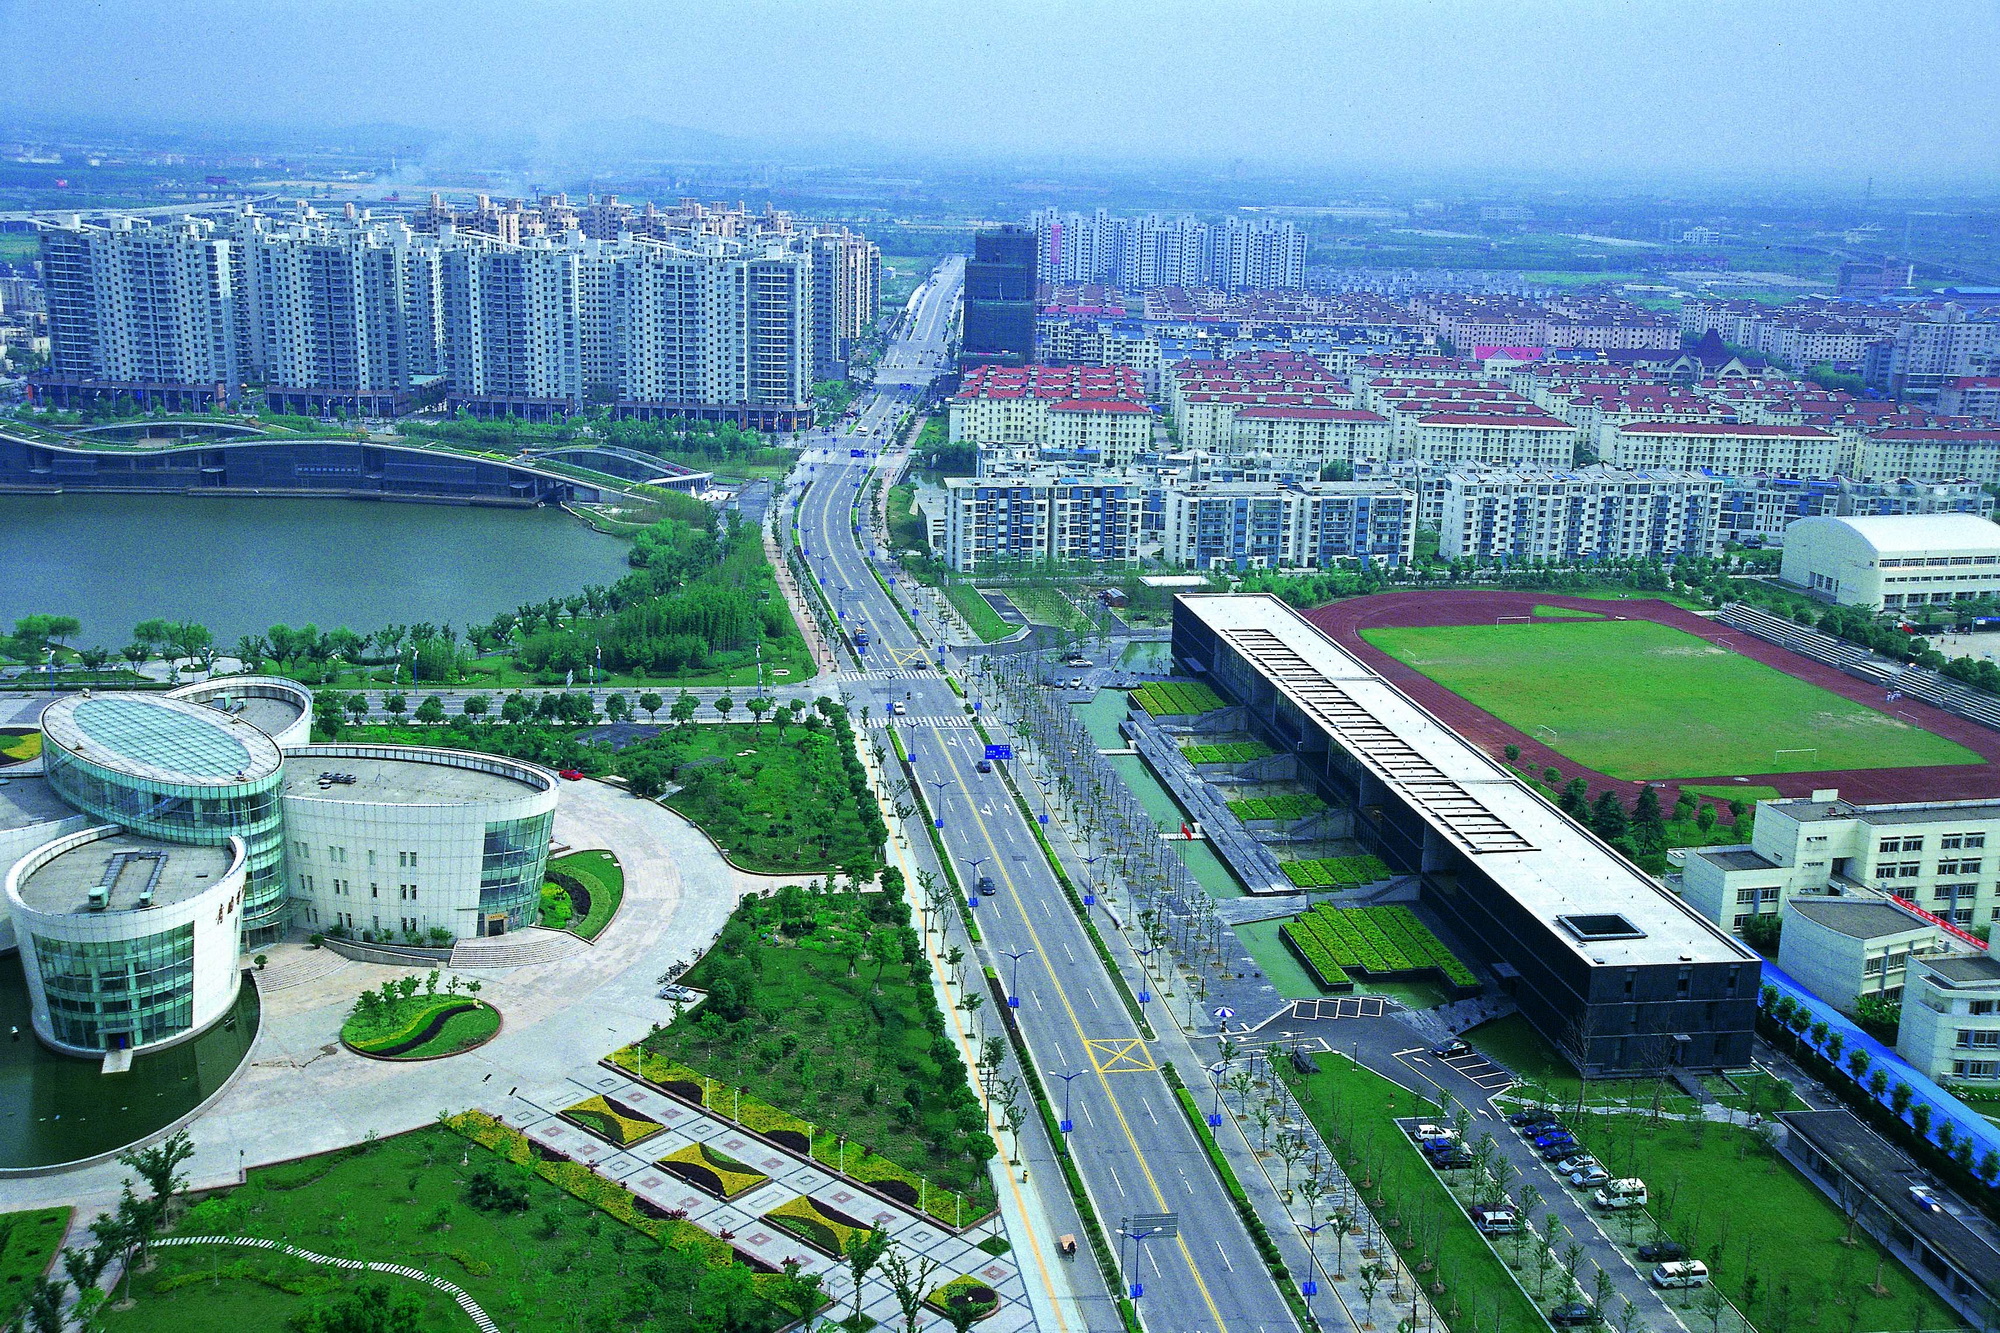 上海青浦区新城建设展示中心